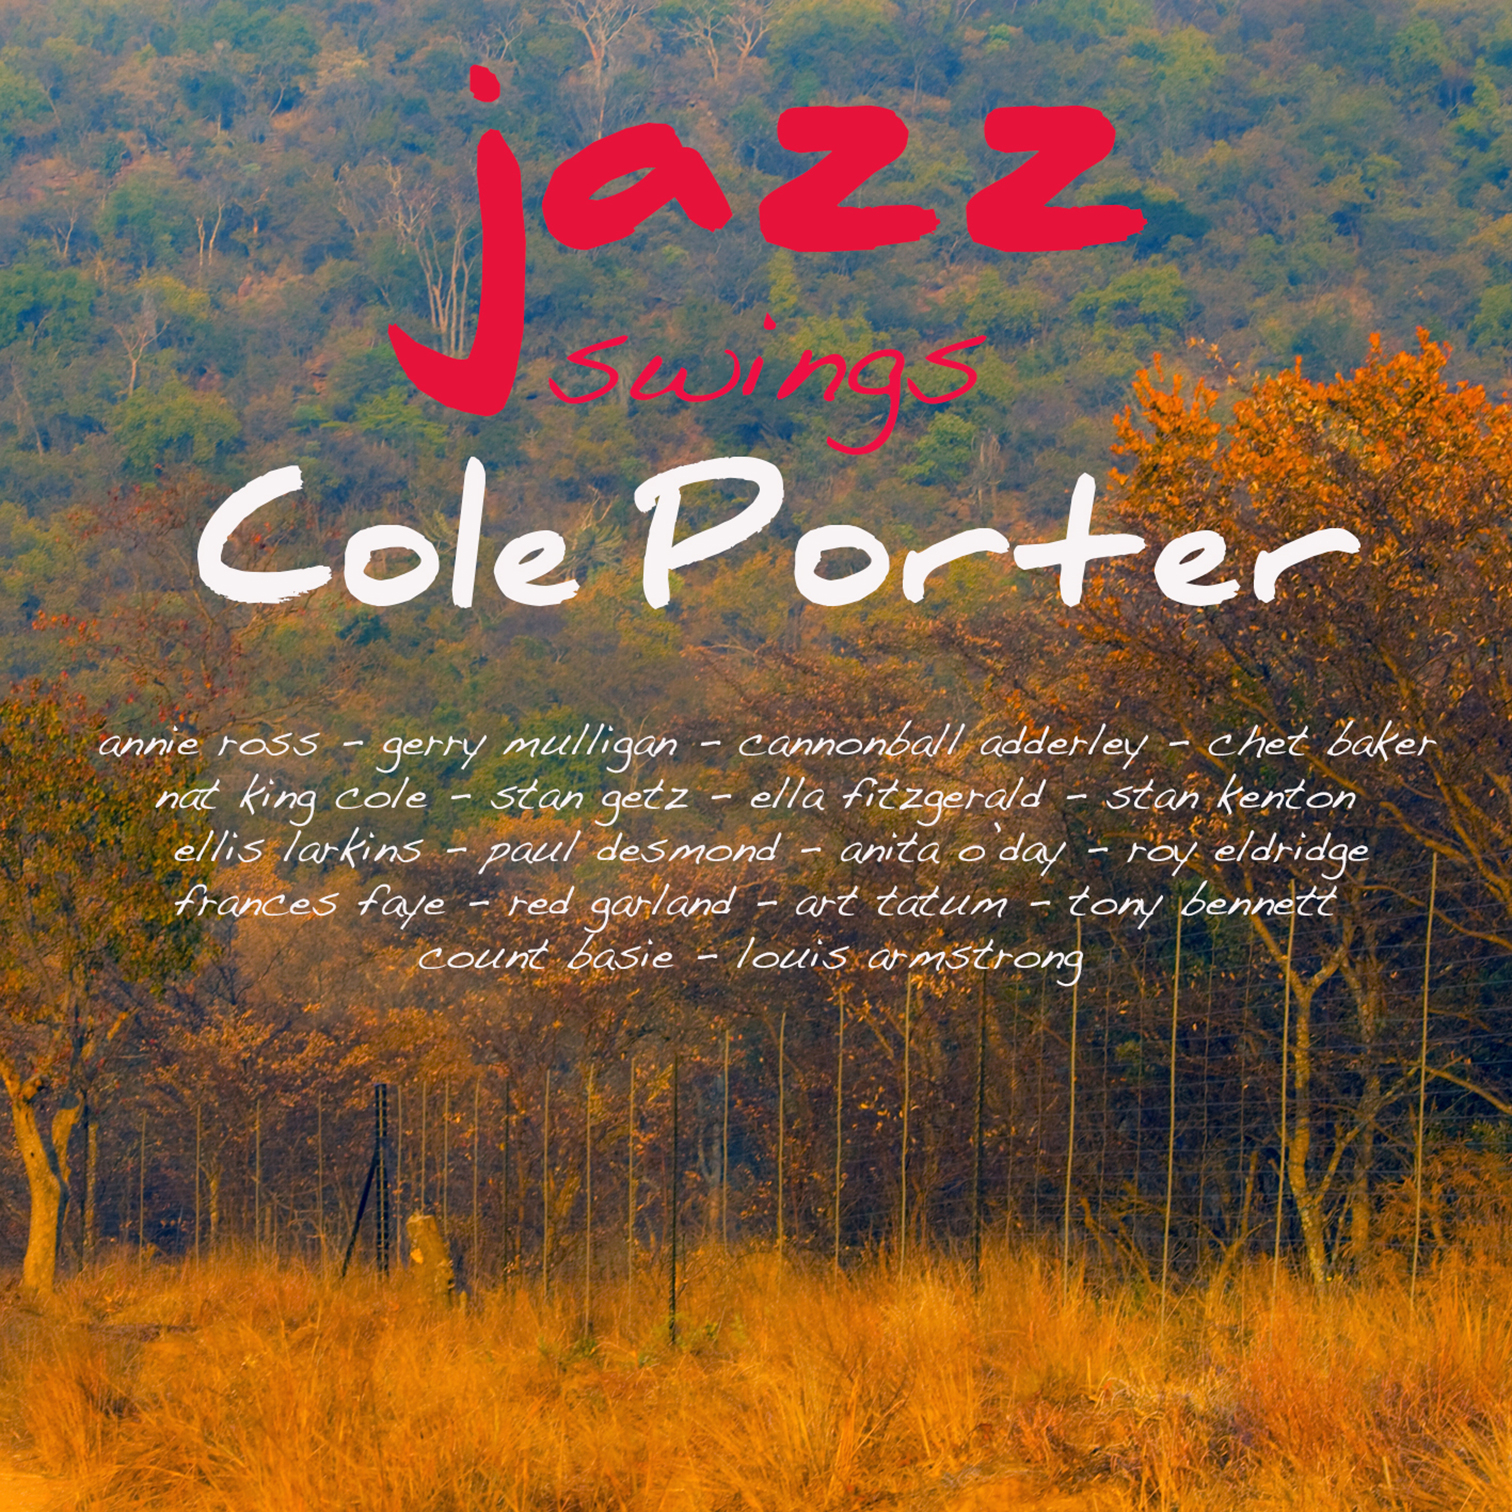 Jazz Swings Cole Porter